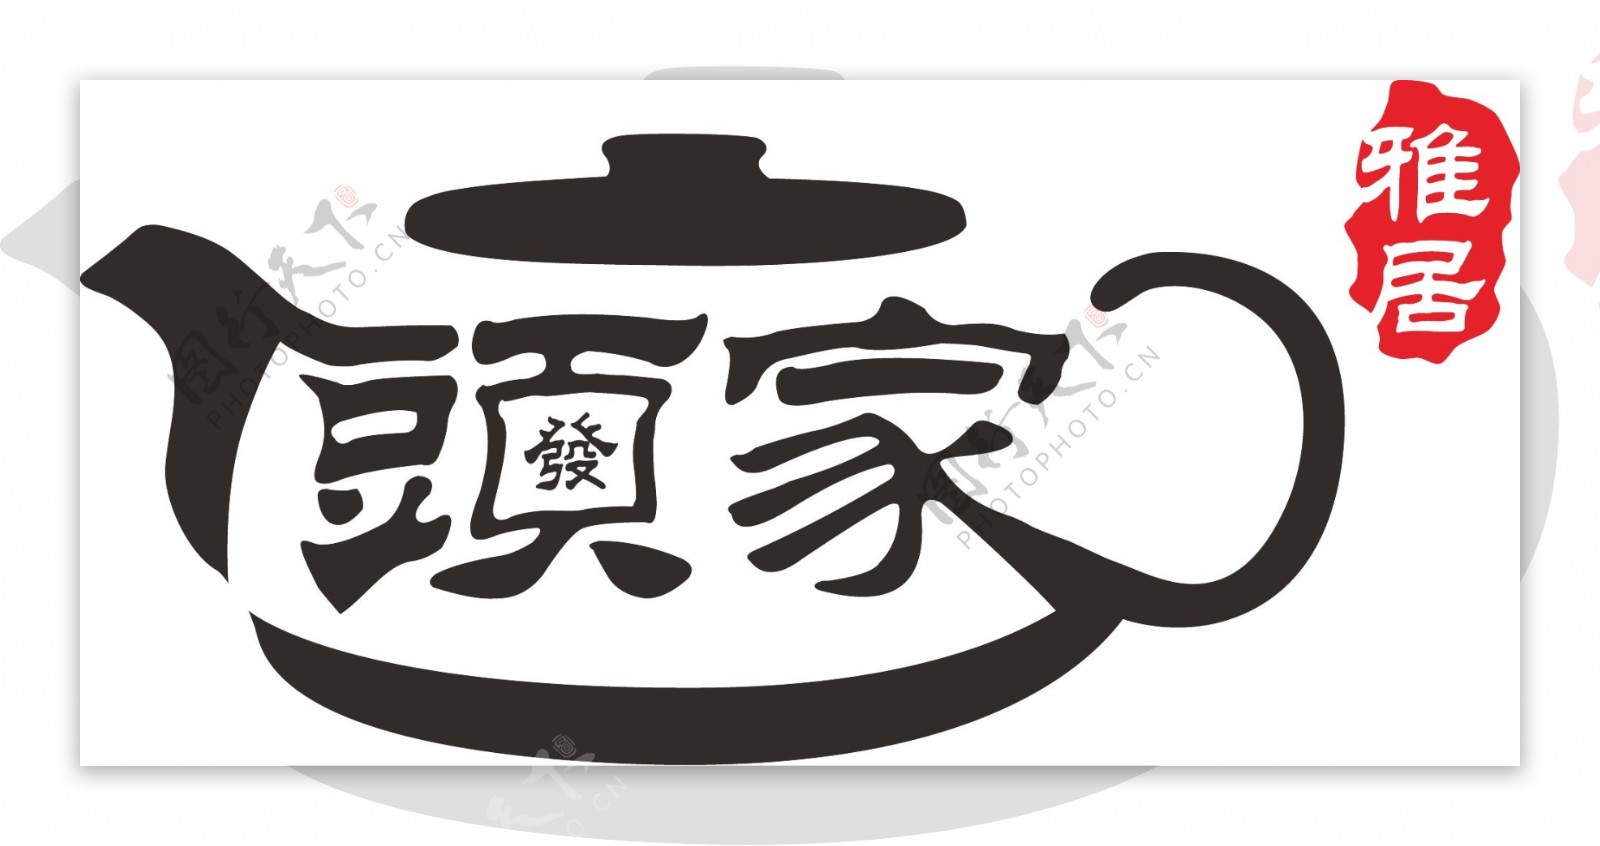 雅居logo图片